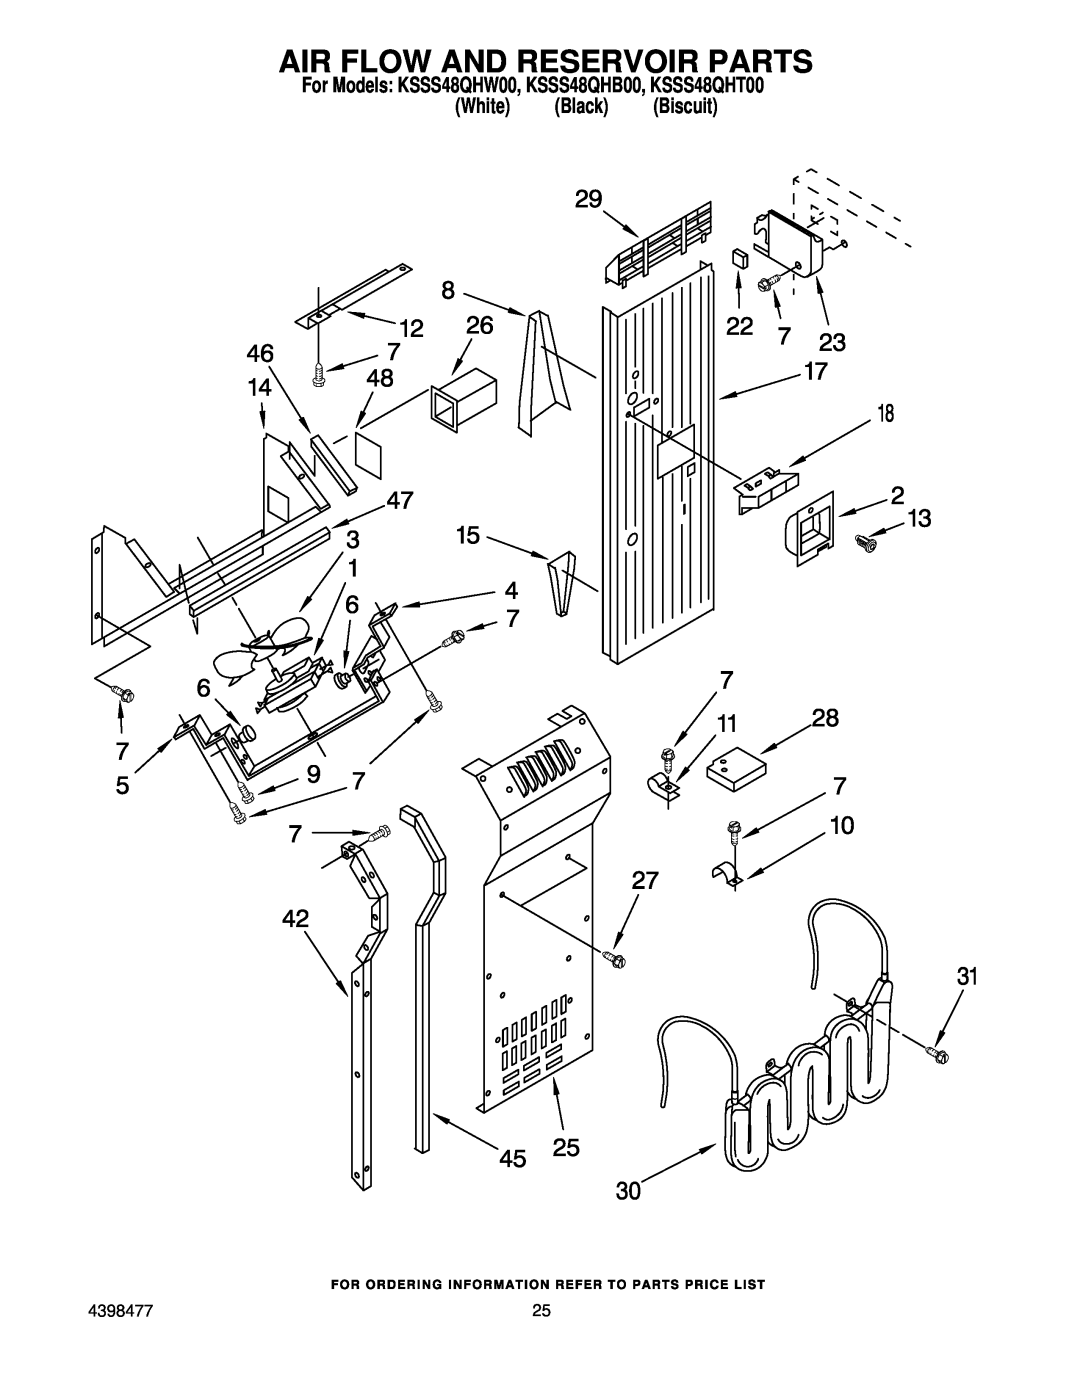 KitchenAid manual Air Flow And Reservoir Parts, For Models KSSS48QHW00, KSSS48QHB00, KSSS48QHT00 White Black Biscuit 